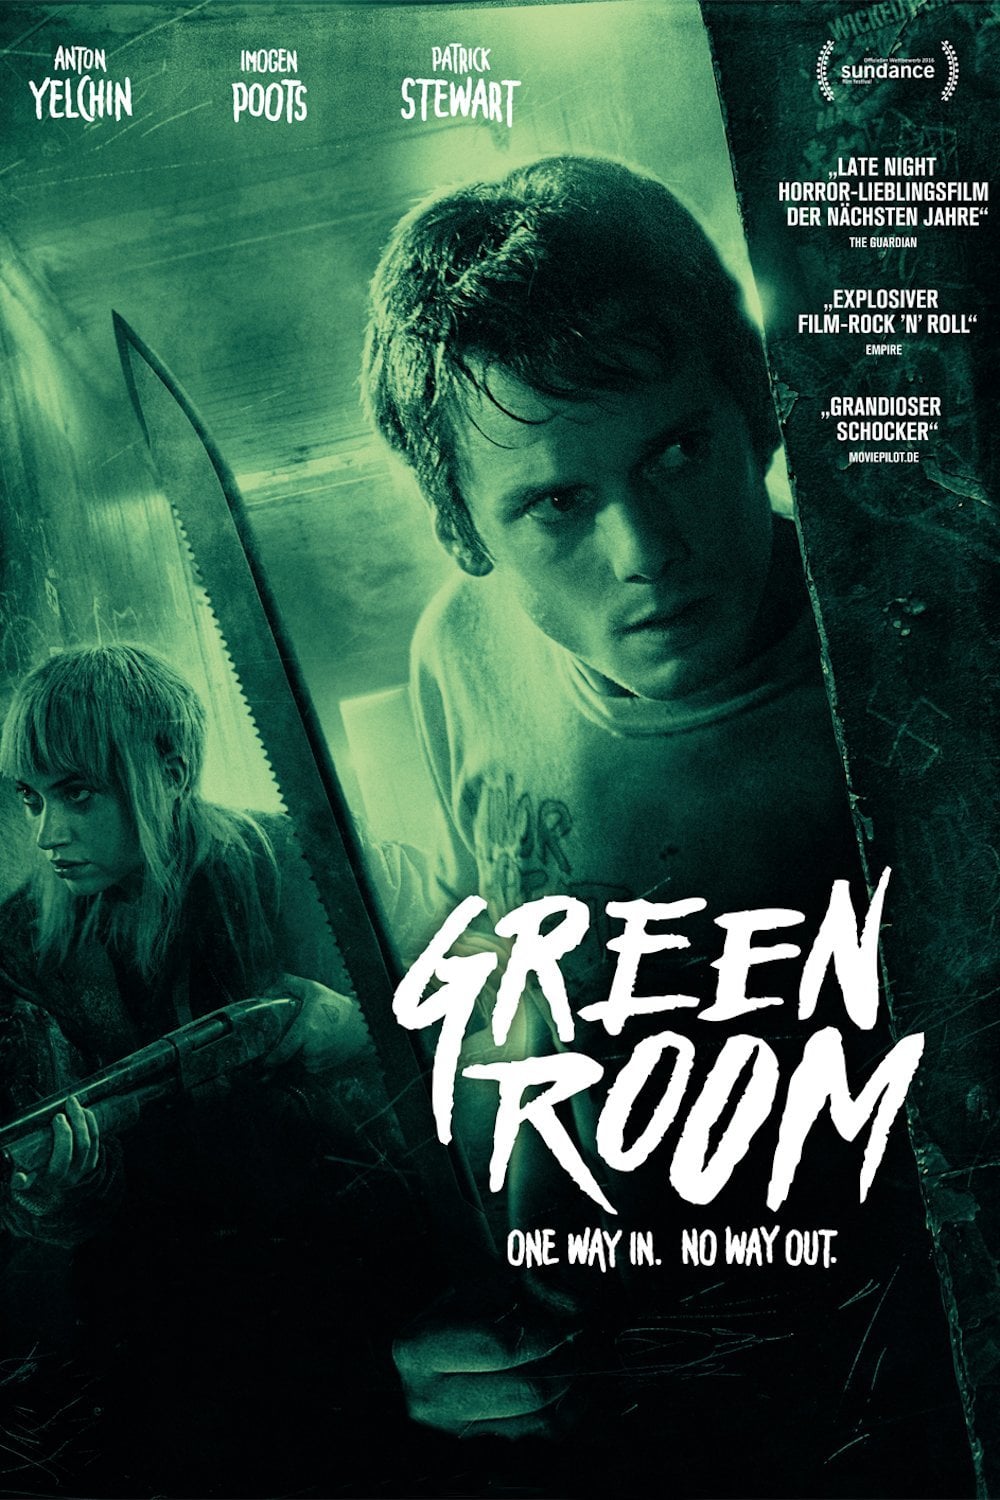 Plakat von "Green Room"